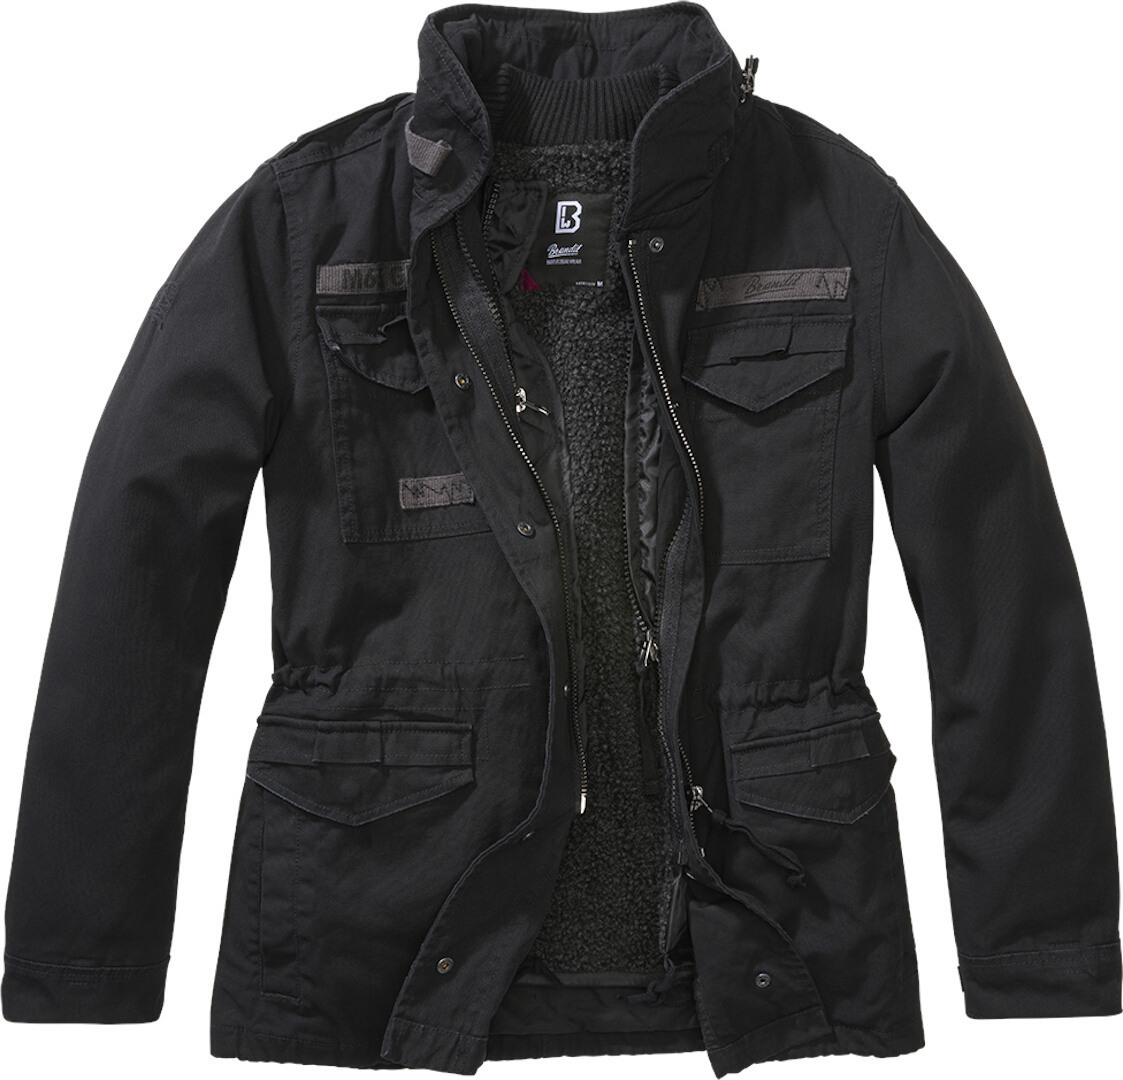 Женская куртка Brandit M65 Giant с регулируемой талией, черный 2311 куртка женская черный pang million